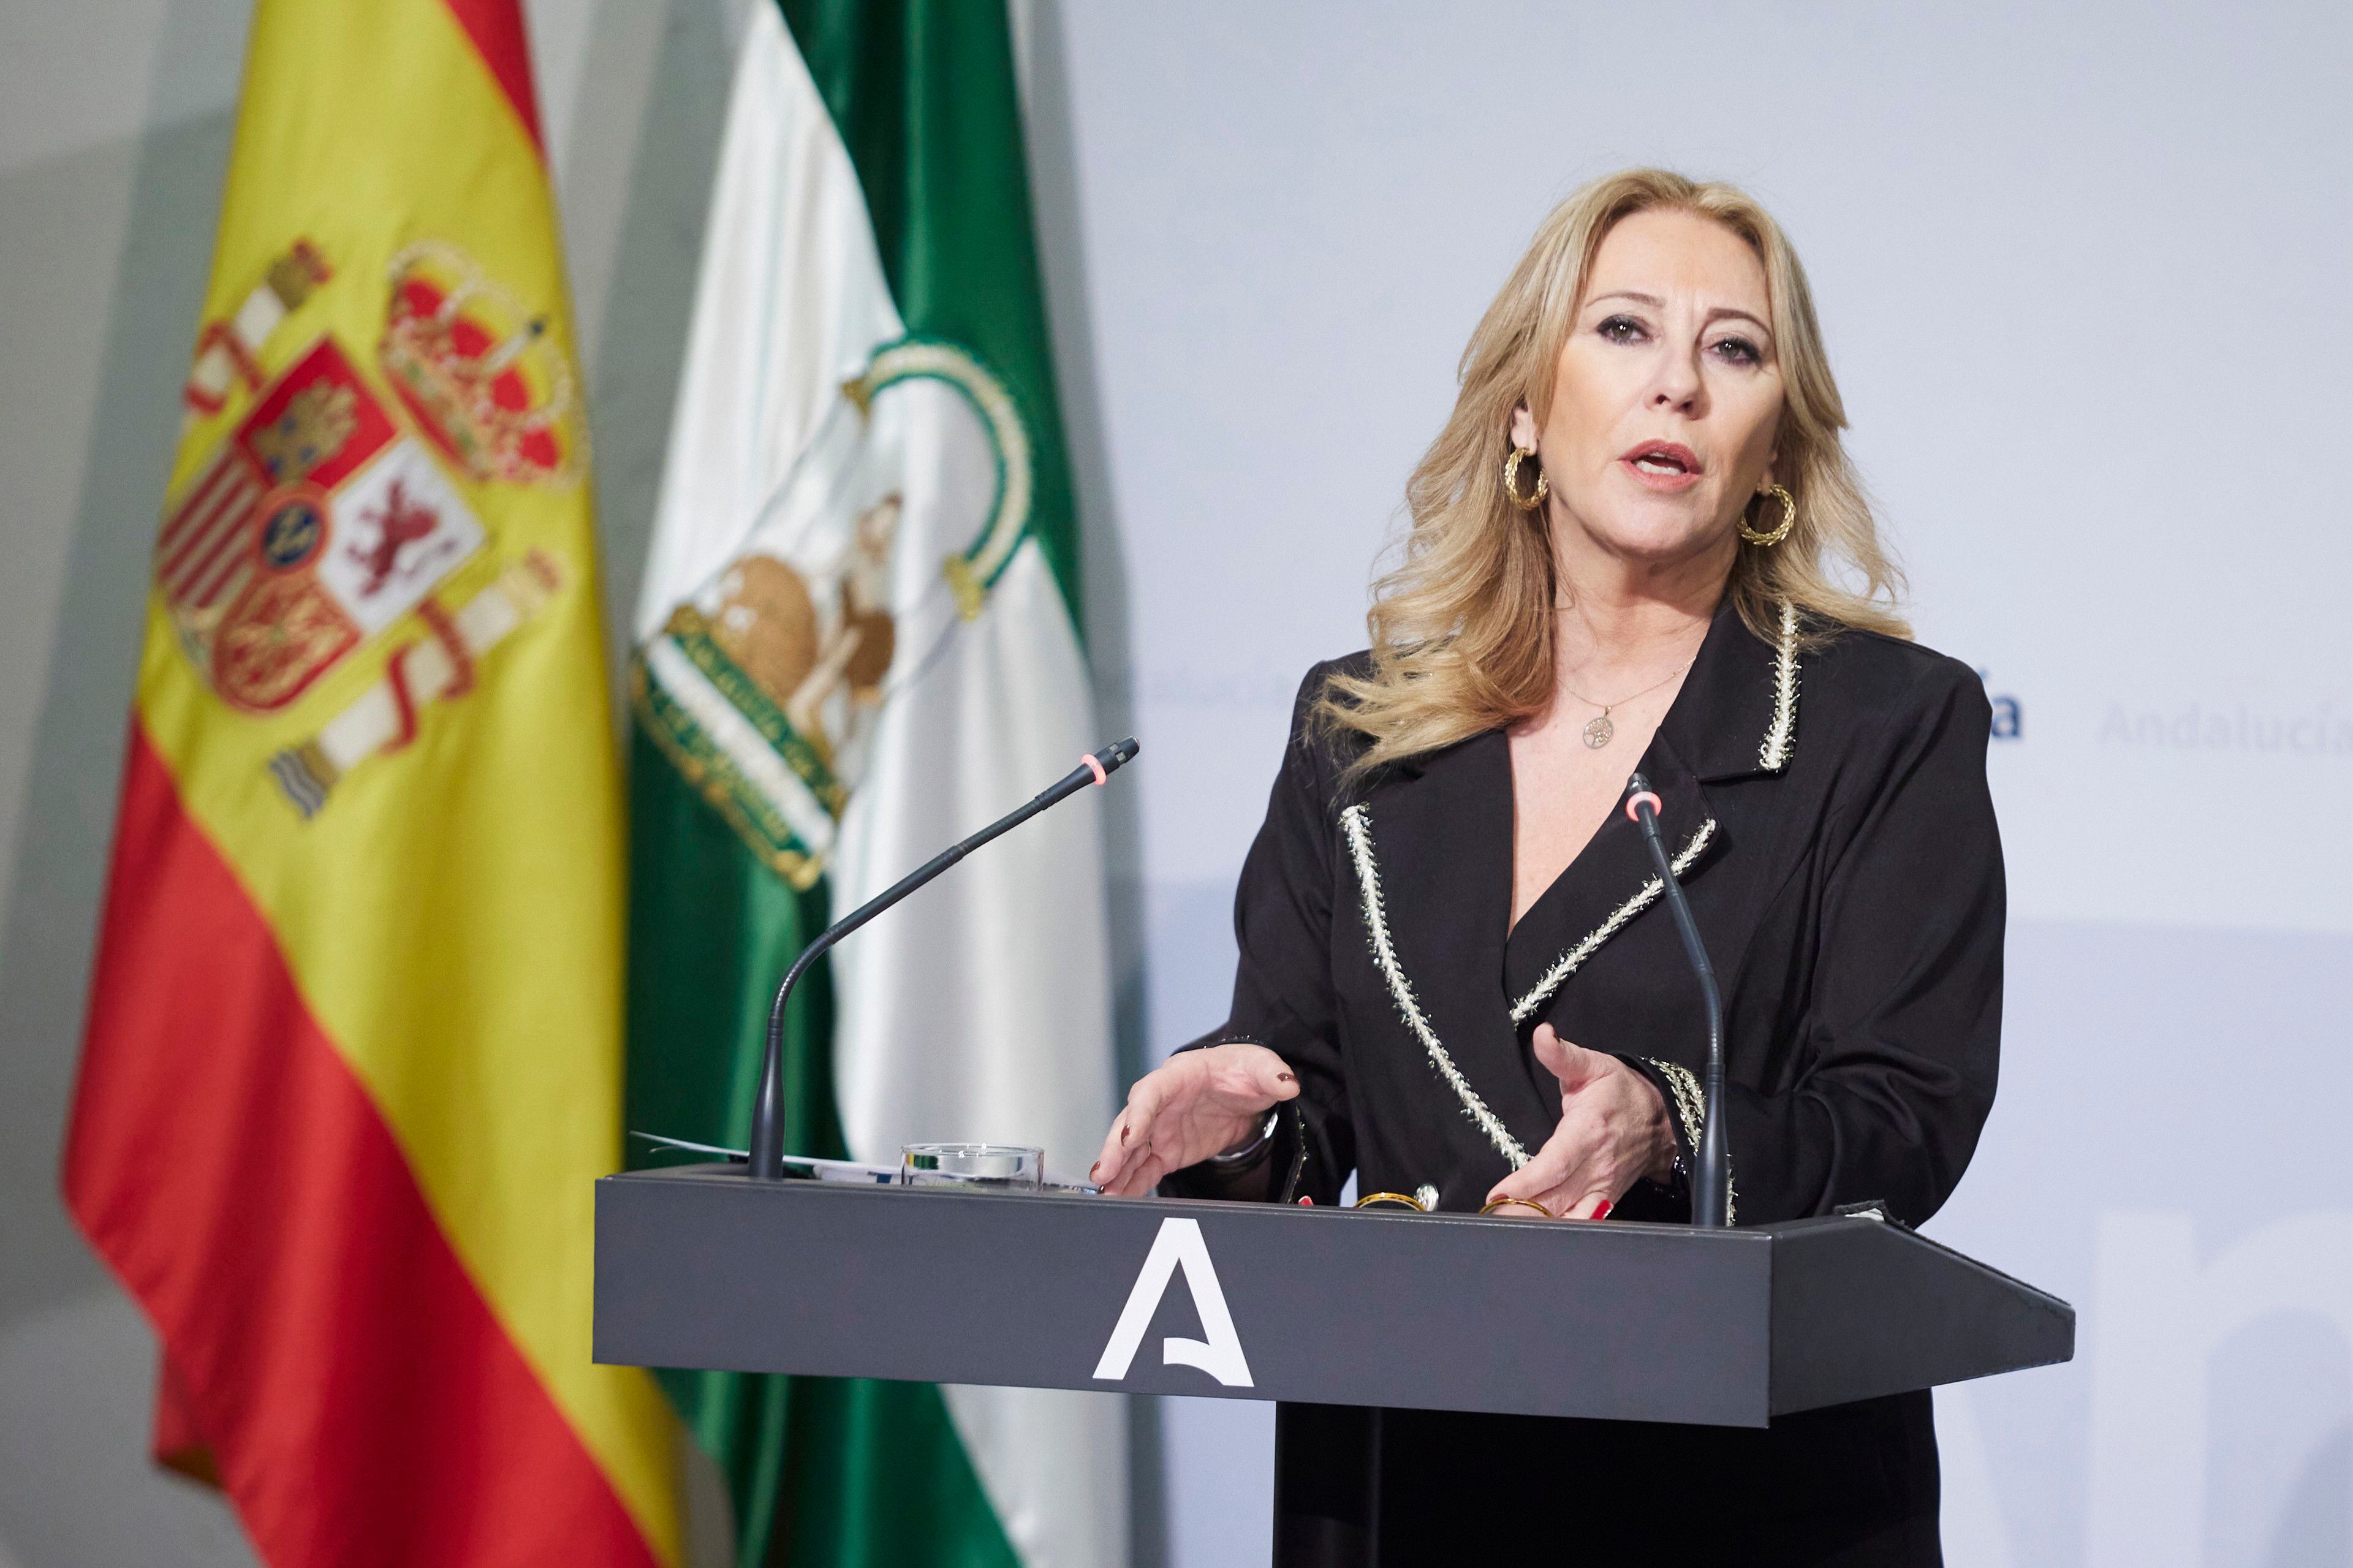 La consejera de Economía y Hacienda de la Junta de Andalucía, Carolina España, anuncia la presentación del recurso ante el Constitucional del impuesto a las grandes fortunas.